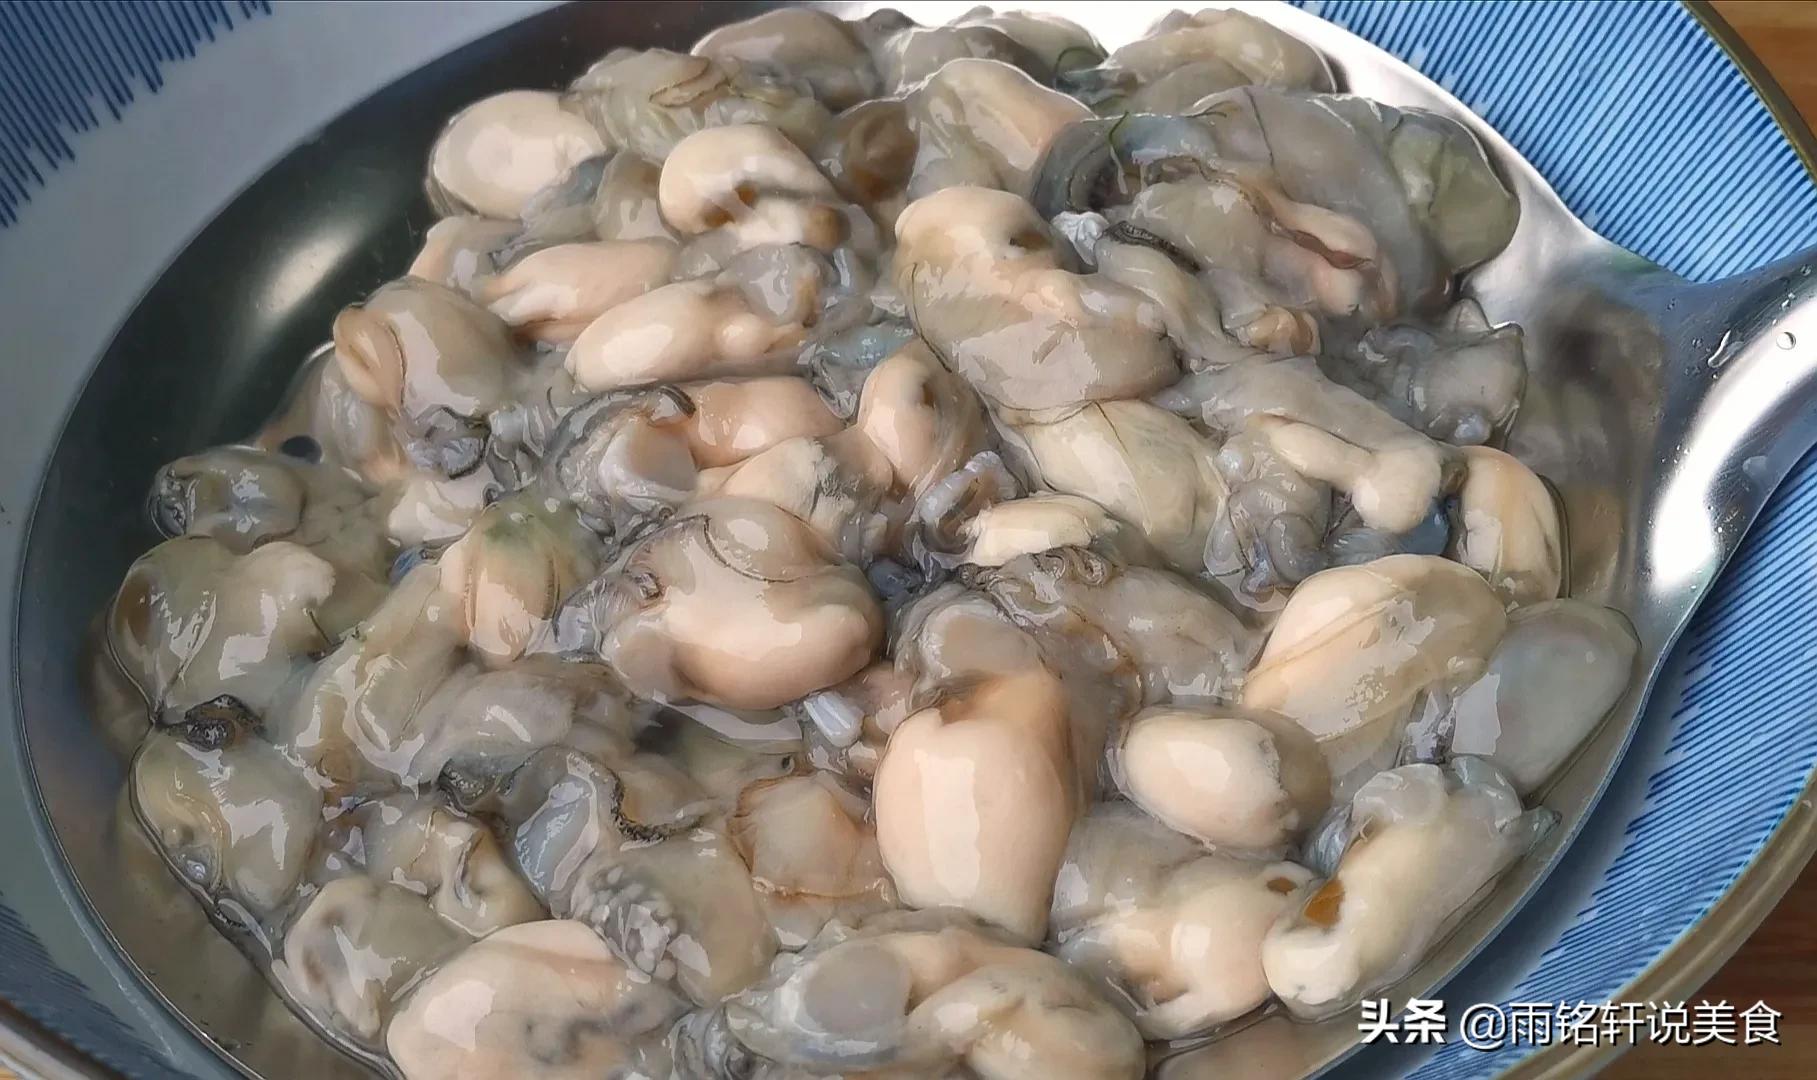 海蛎不做海蛎煎了，做成紫菜海蛎饼更美味，外酥里嫩，天天吃不够